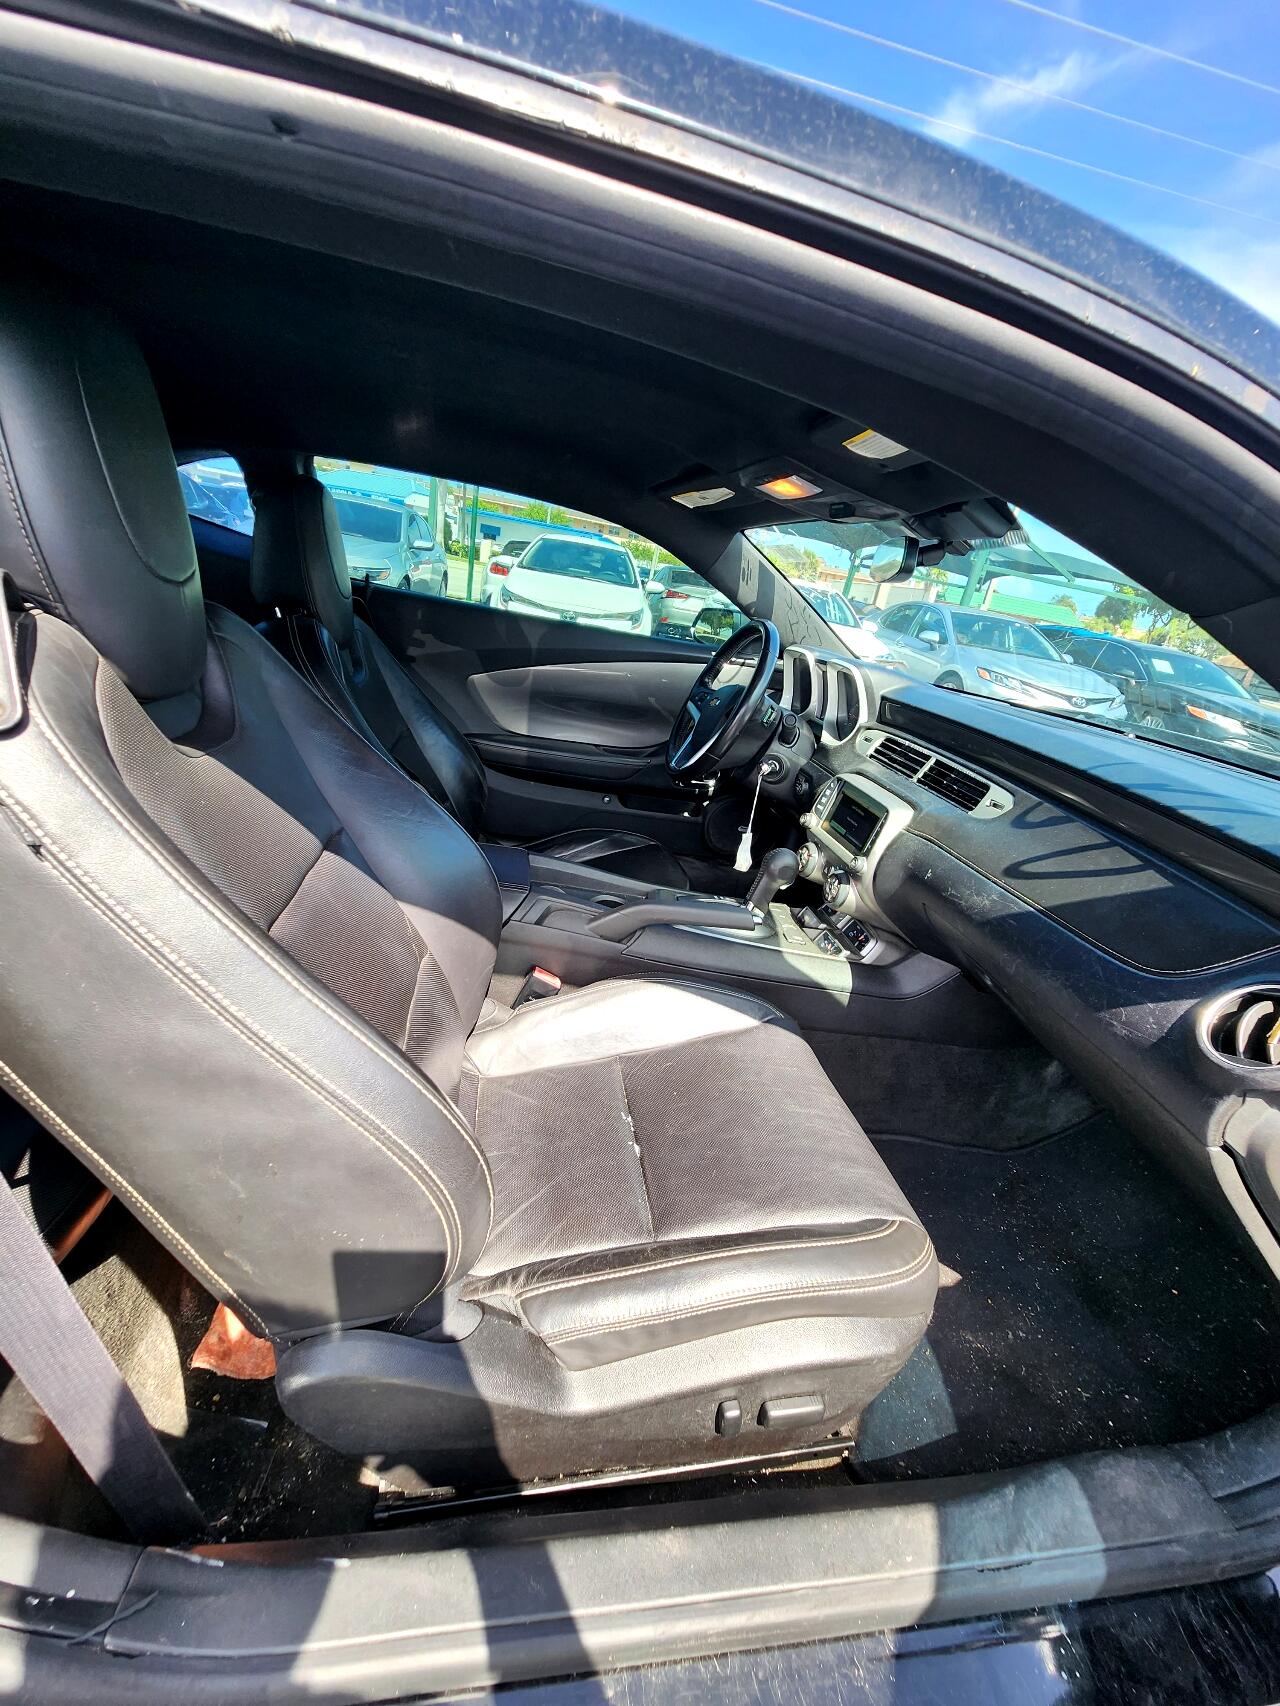 2015 CHEVROLET Camaro Coupe - $17,999